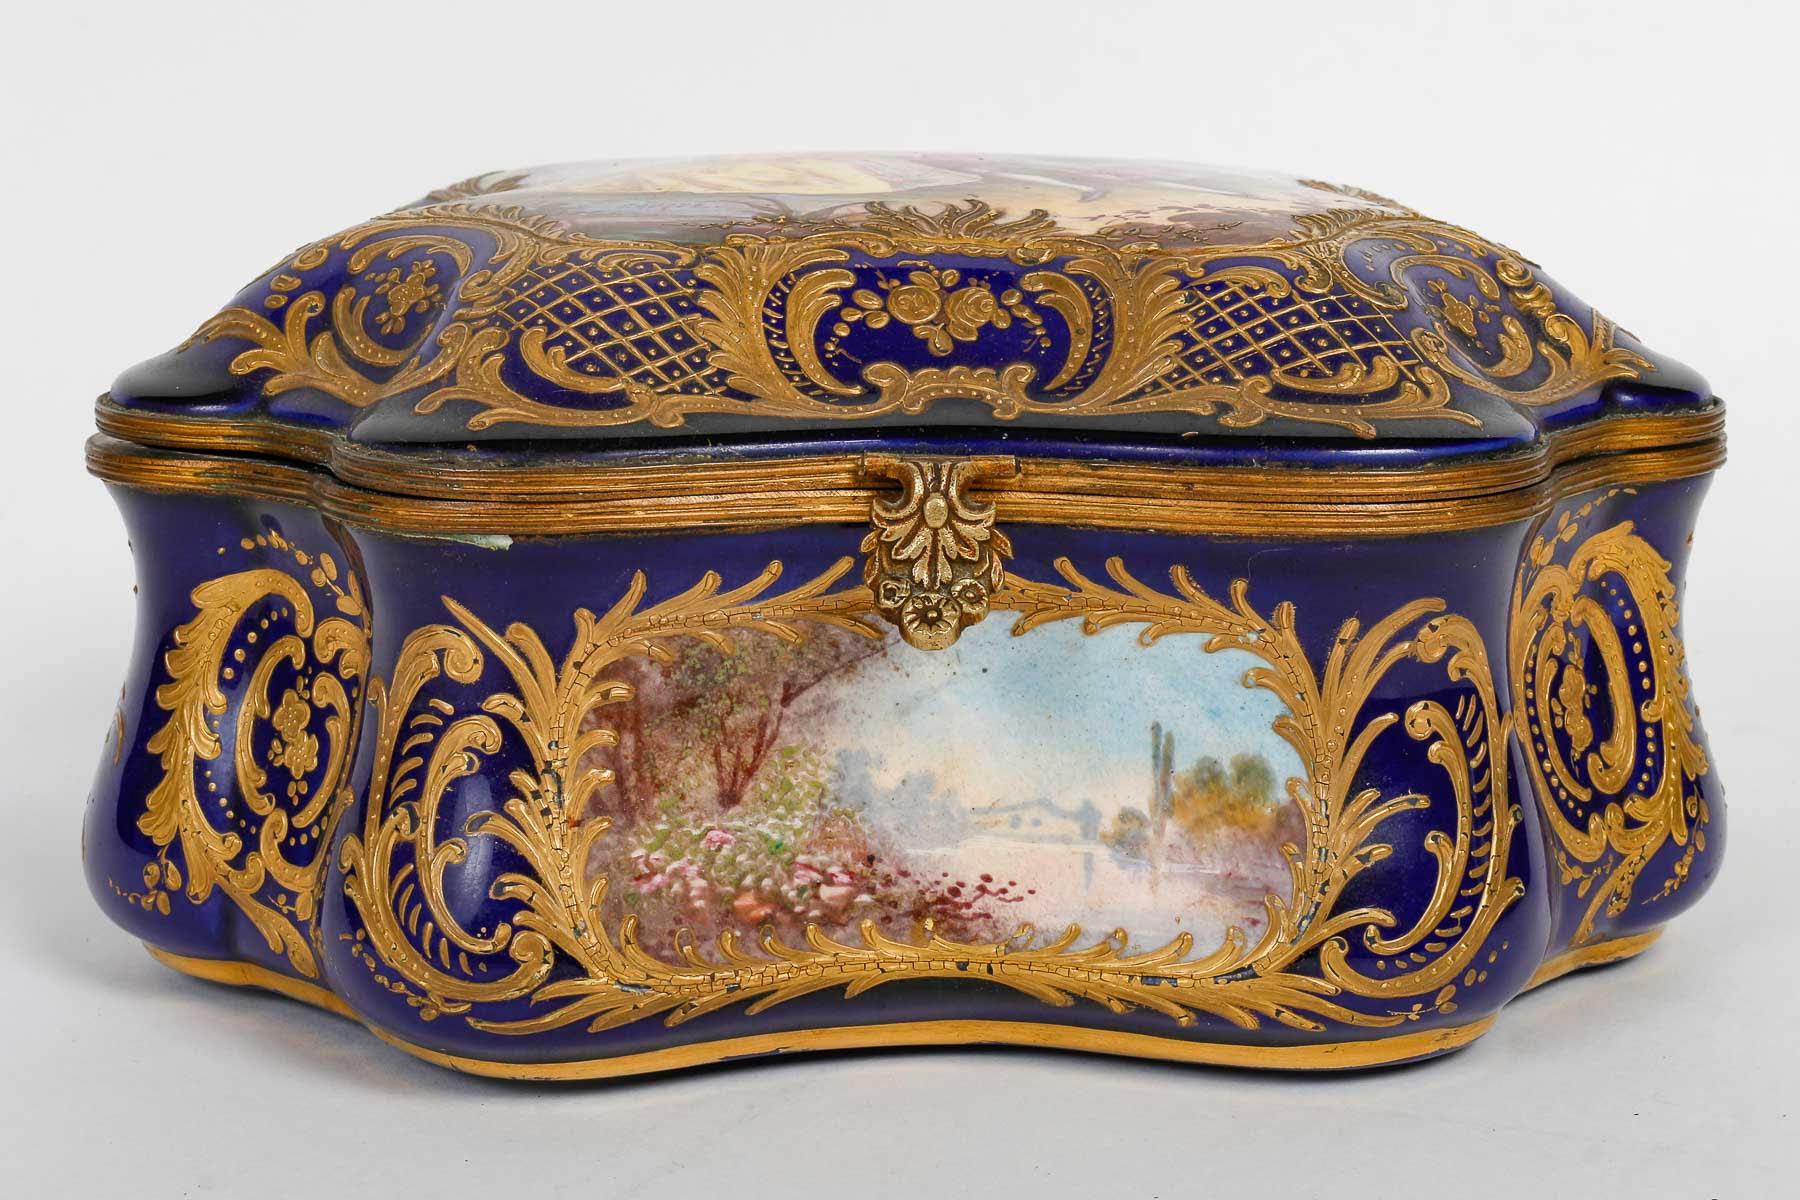 Sèvres Porzellandose und -truhe, 19. Jahrhundert.

Porzellandose aus Sèvres, reich verziert mit 3 Gemälden auf dem Gürtel und einem auf dem Deckel, mit Gold verziert, Periode Napoleon III, 19.

H: 11cm, B: 22cm, T: 17,5cm